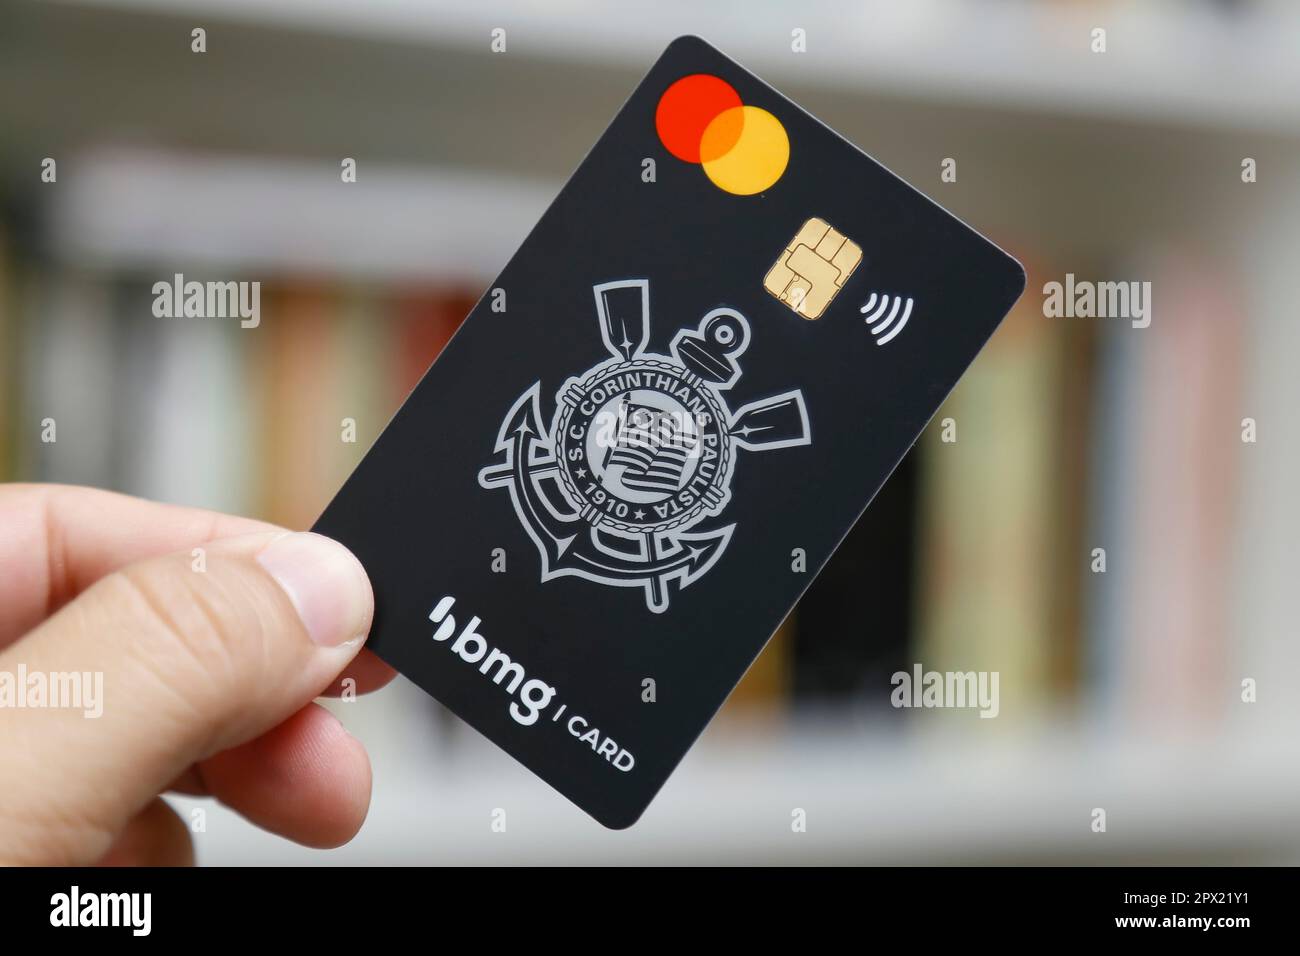 Minas Gerais, Brasilien - 01. Mai 2023: Kreditkarte mit dem Mastercard-Logo der BMG Corinthians Paulista Bank, redaktionelles Bild. Stockfoto